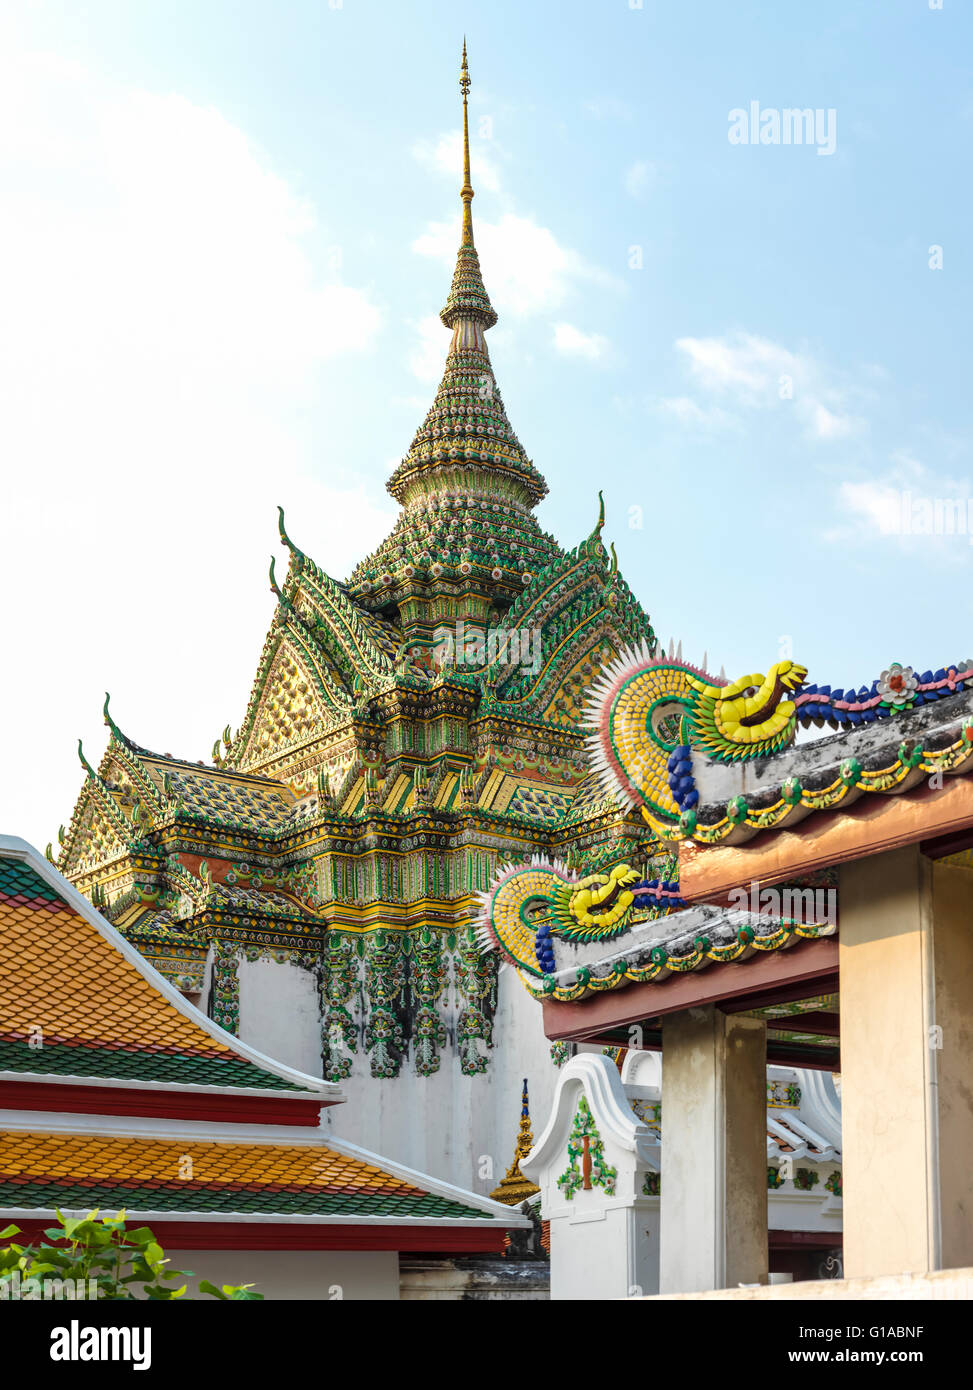 Wat Pho. Phra Nakhon district, Bangkok, Thailand. Stock Photo